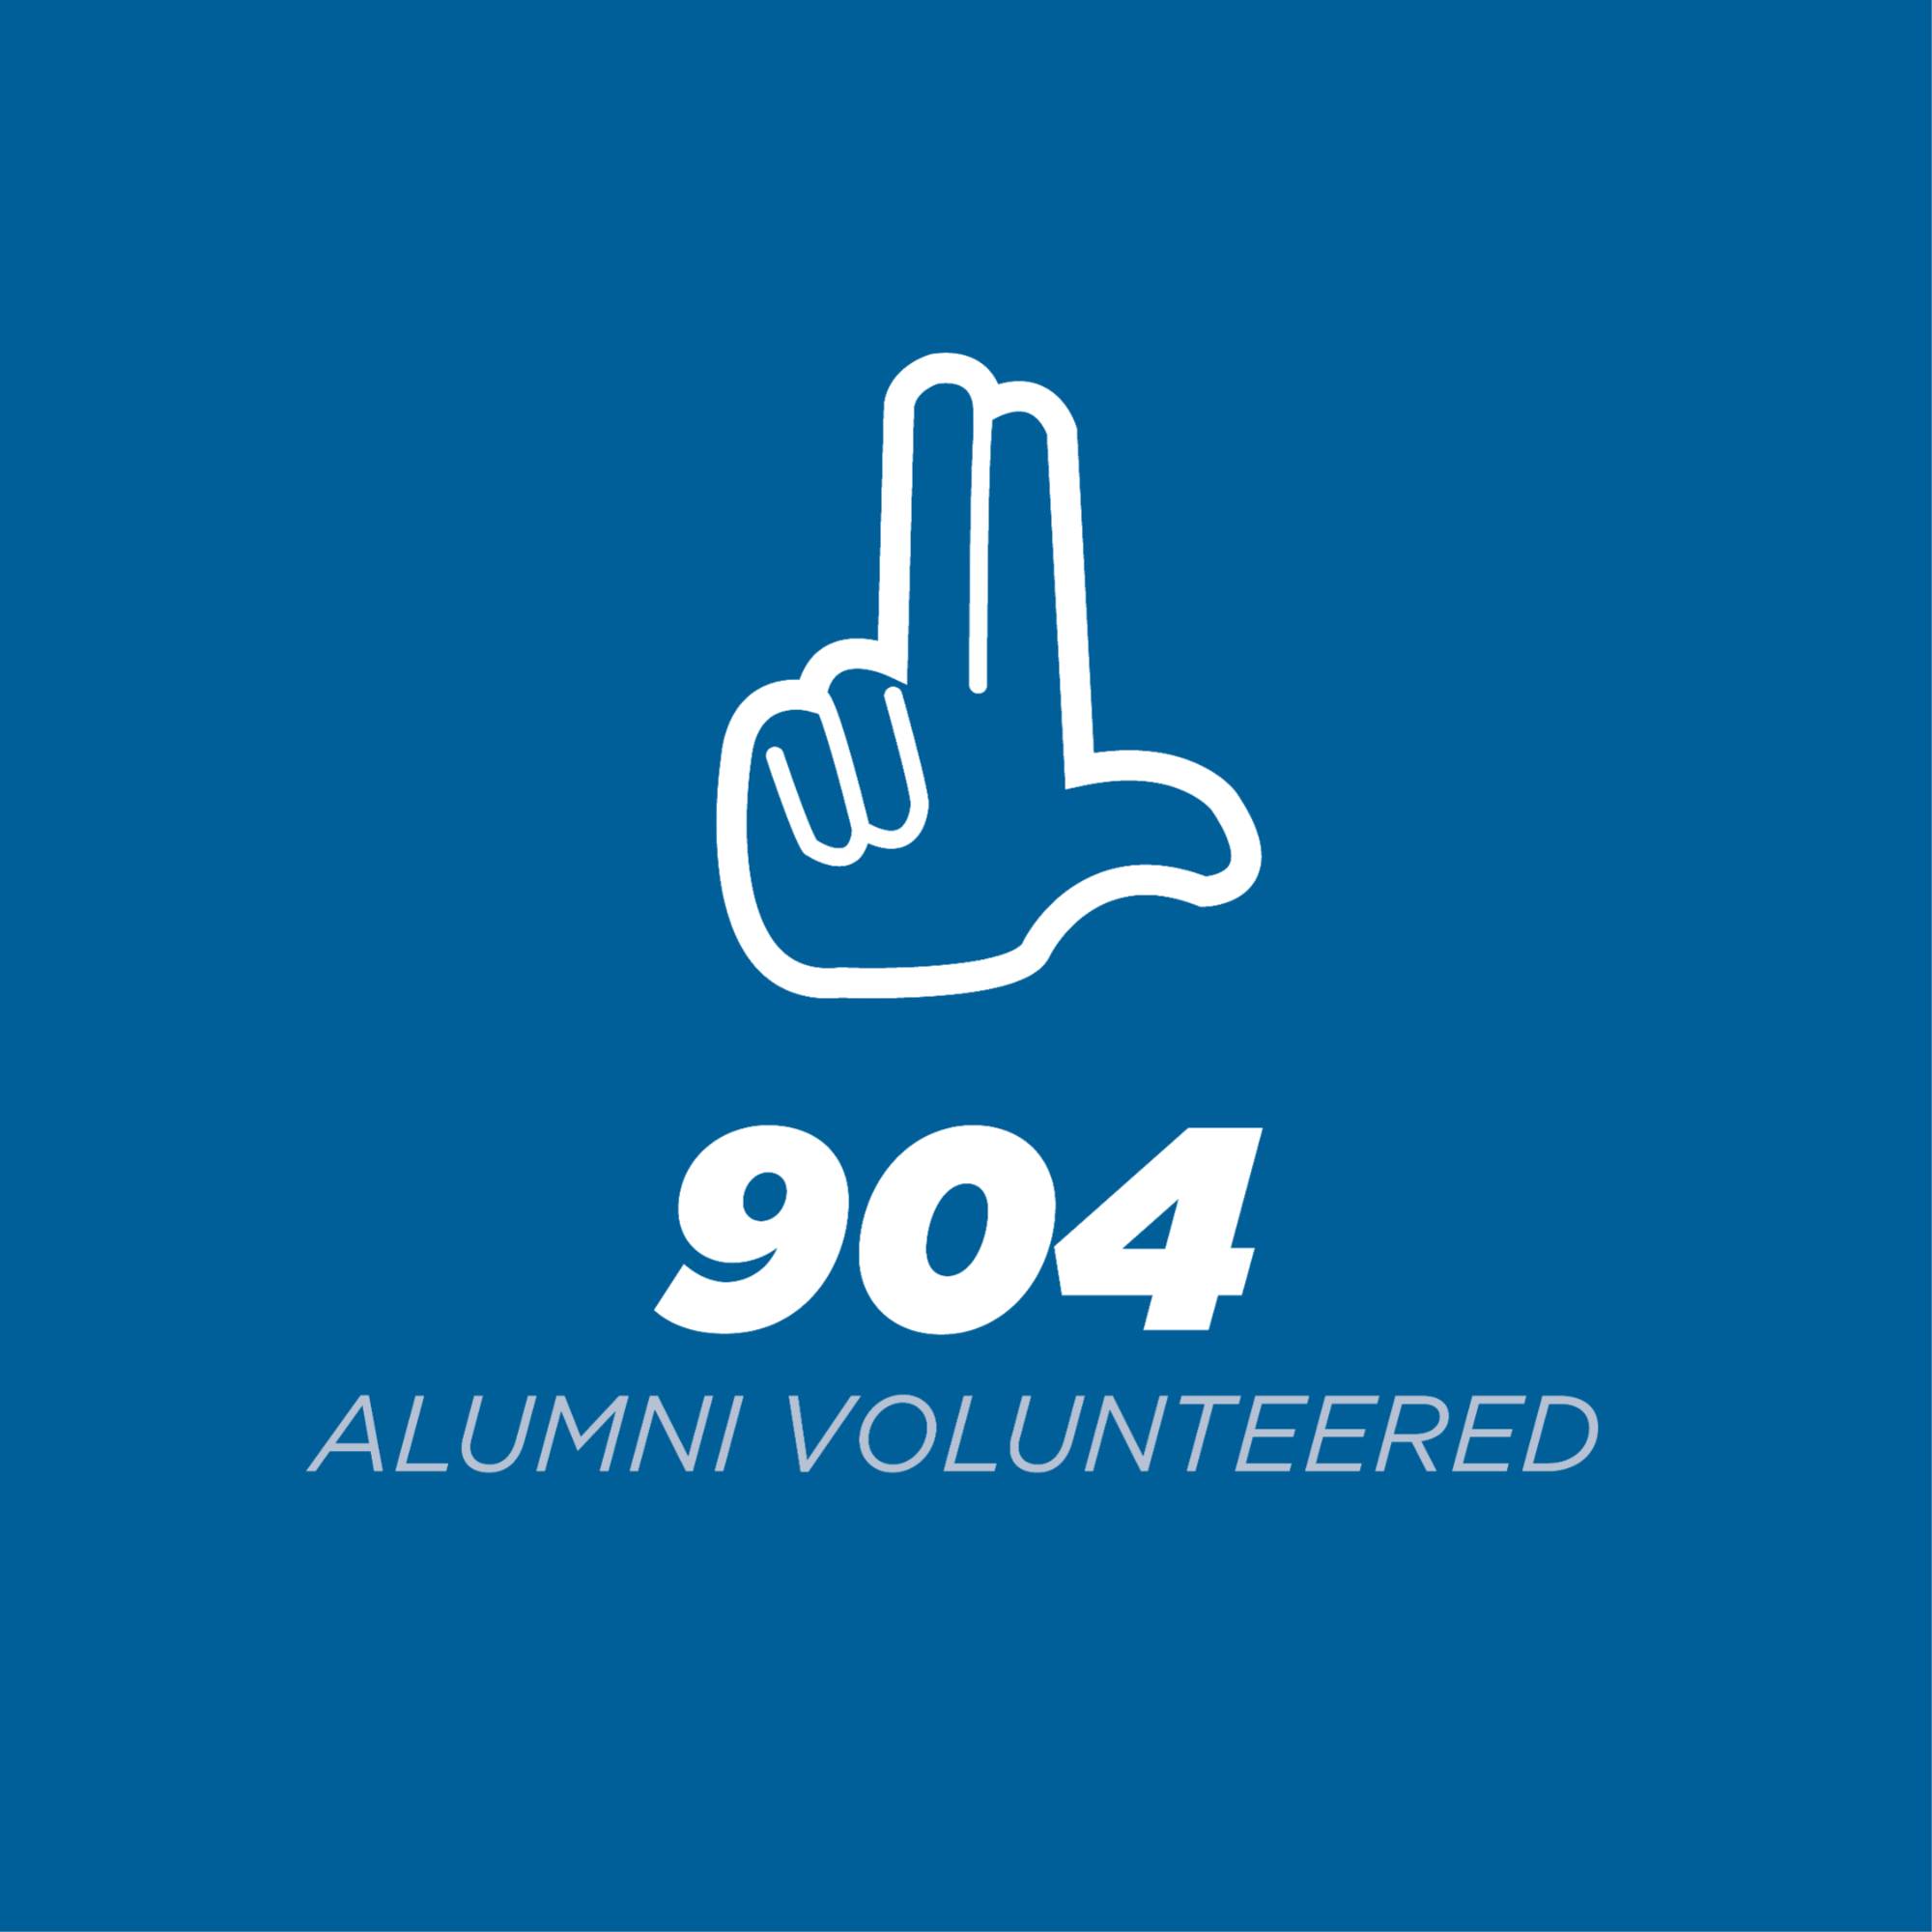 904 alumni volunteered